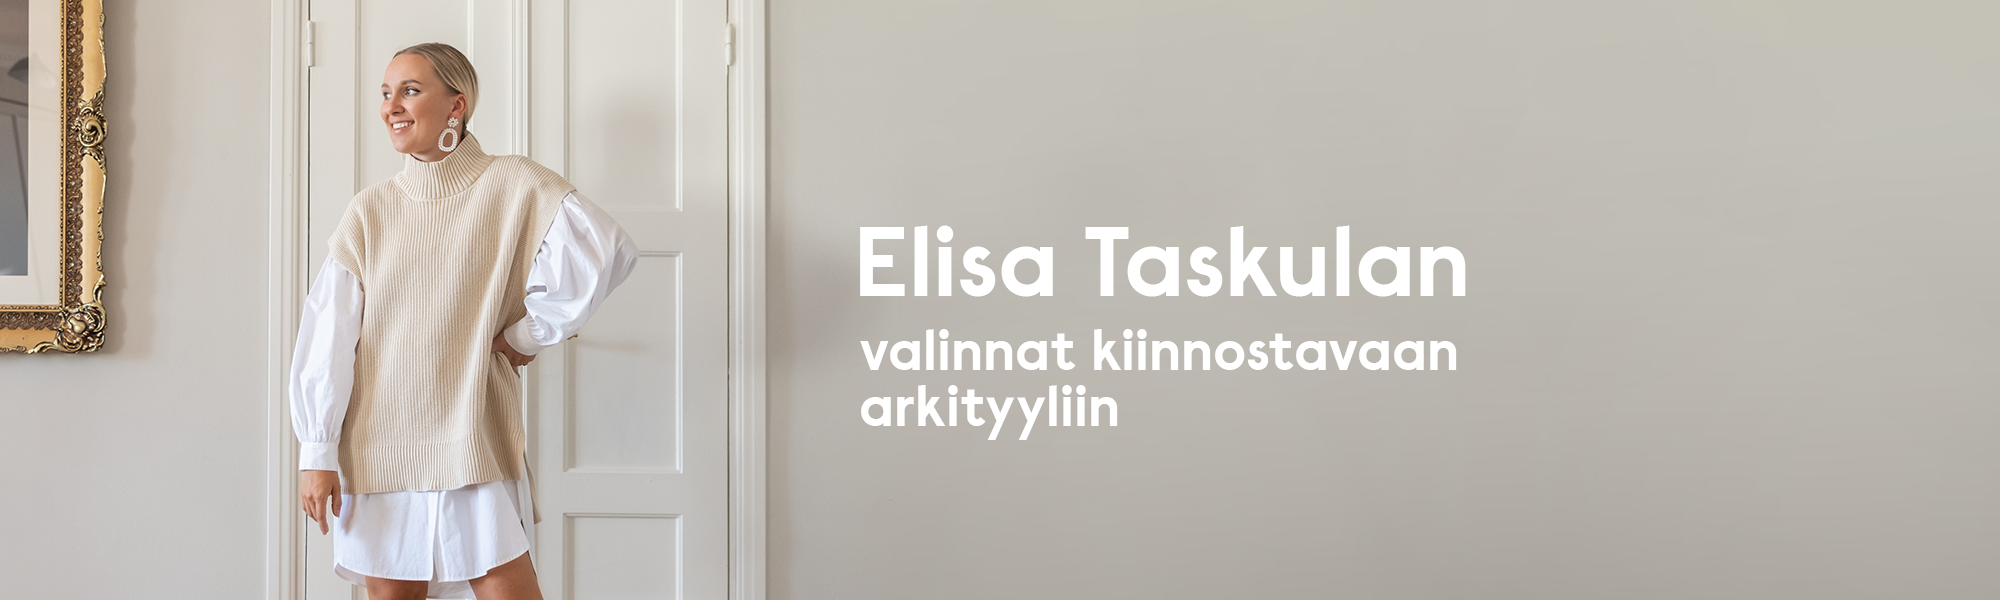 Elisa taskula hero fullwidth